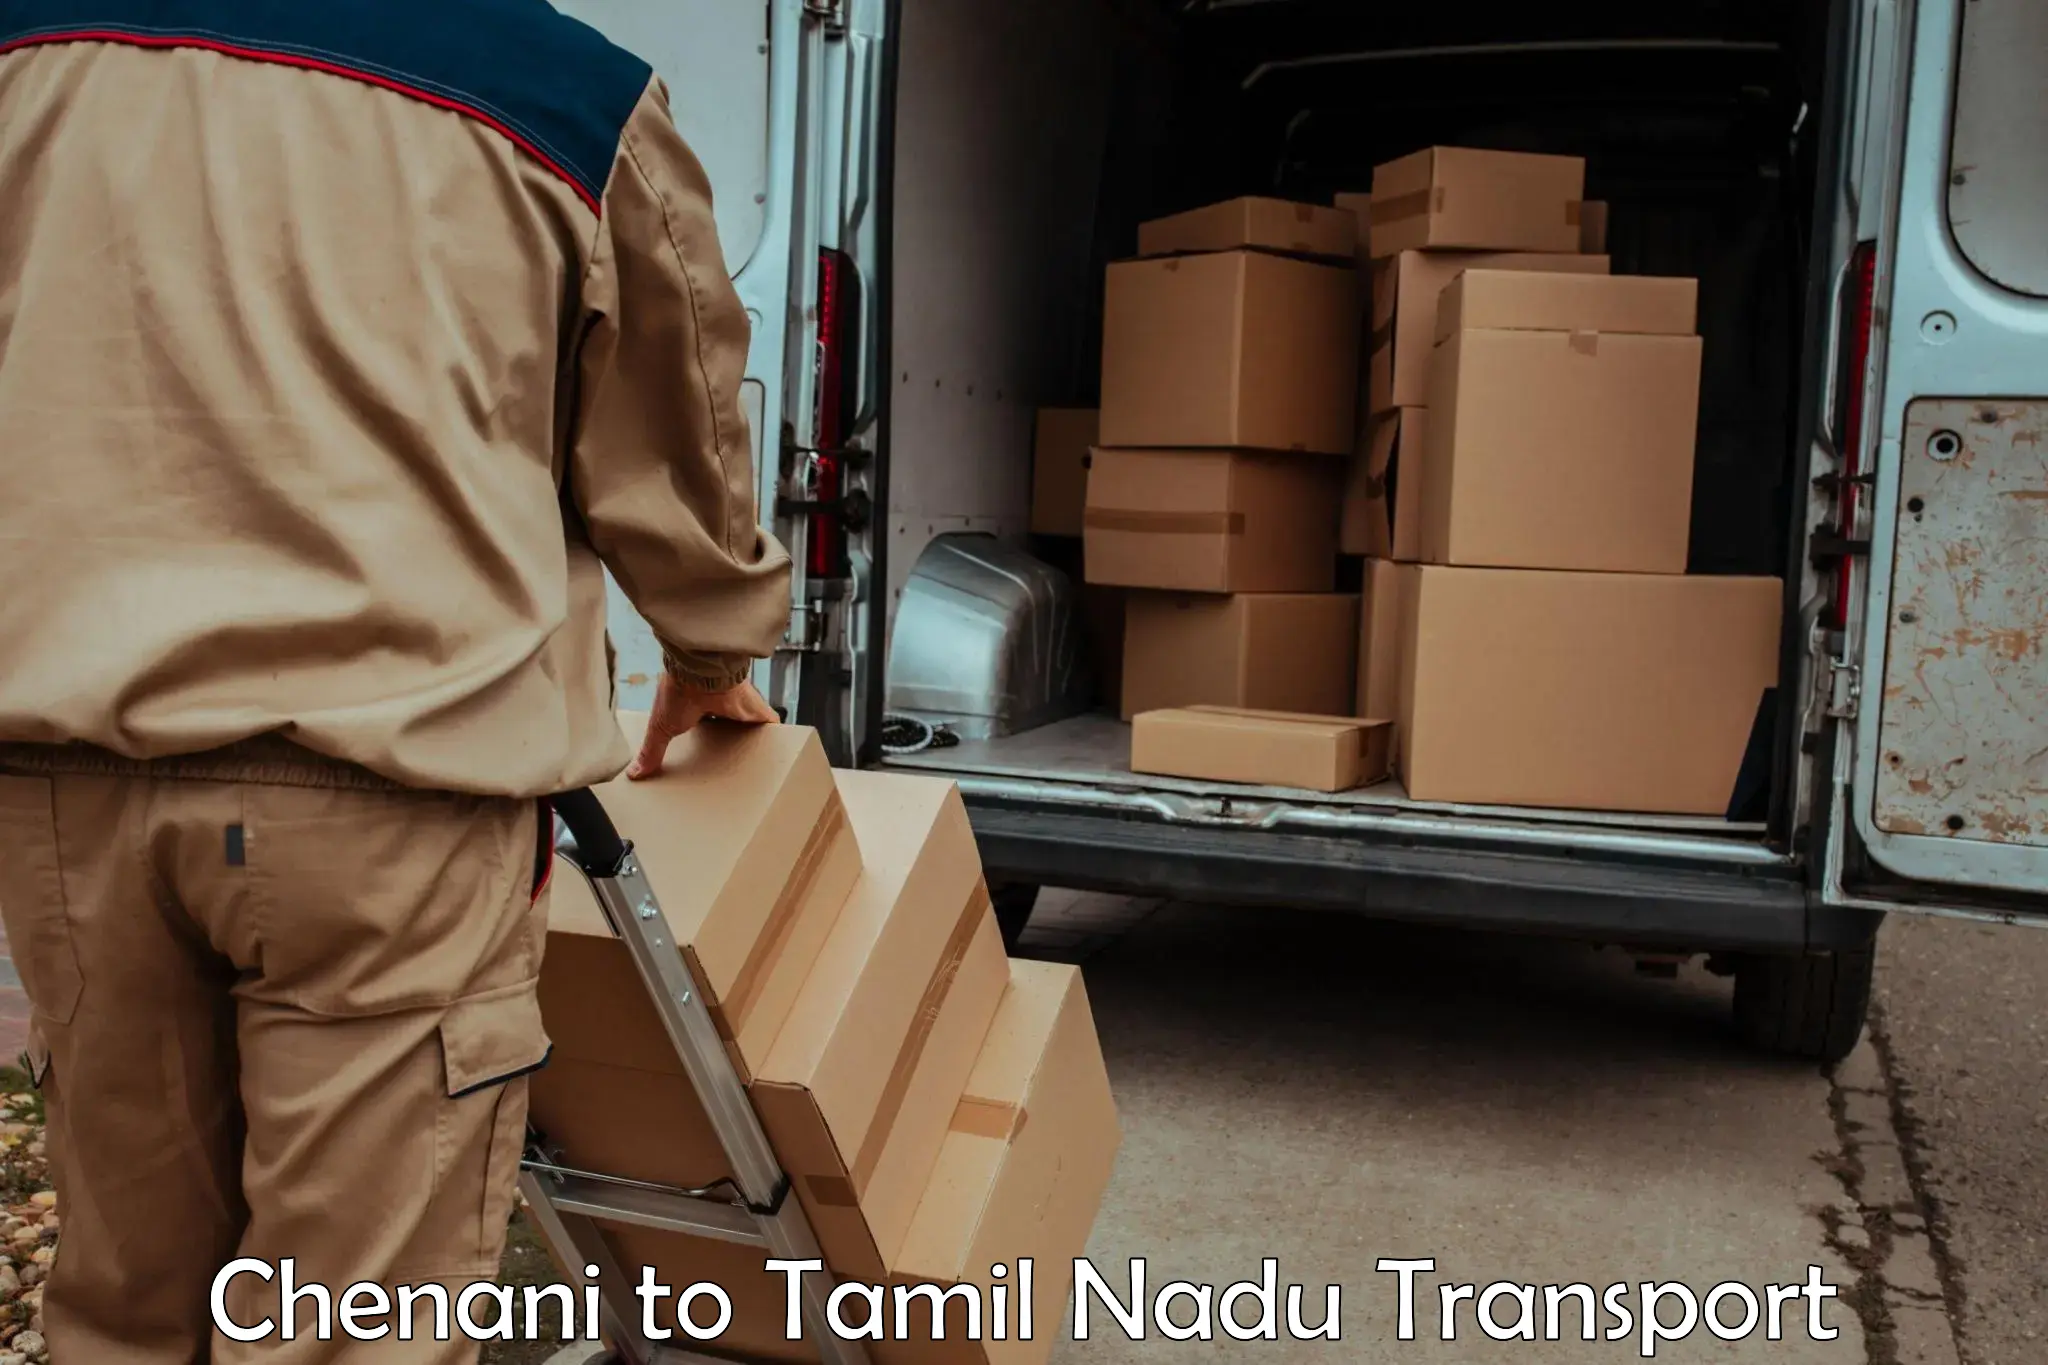 Bike transfer in Chenani to Tamil Nadu